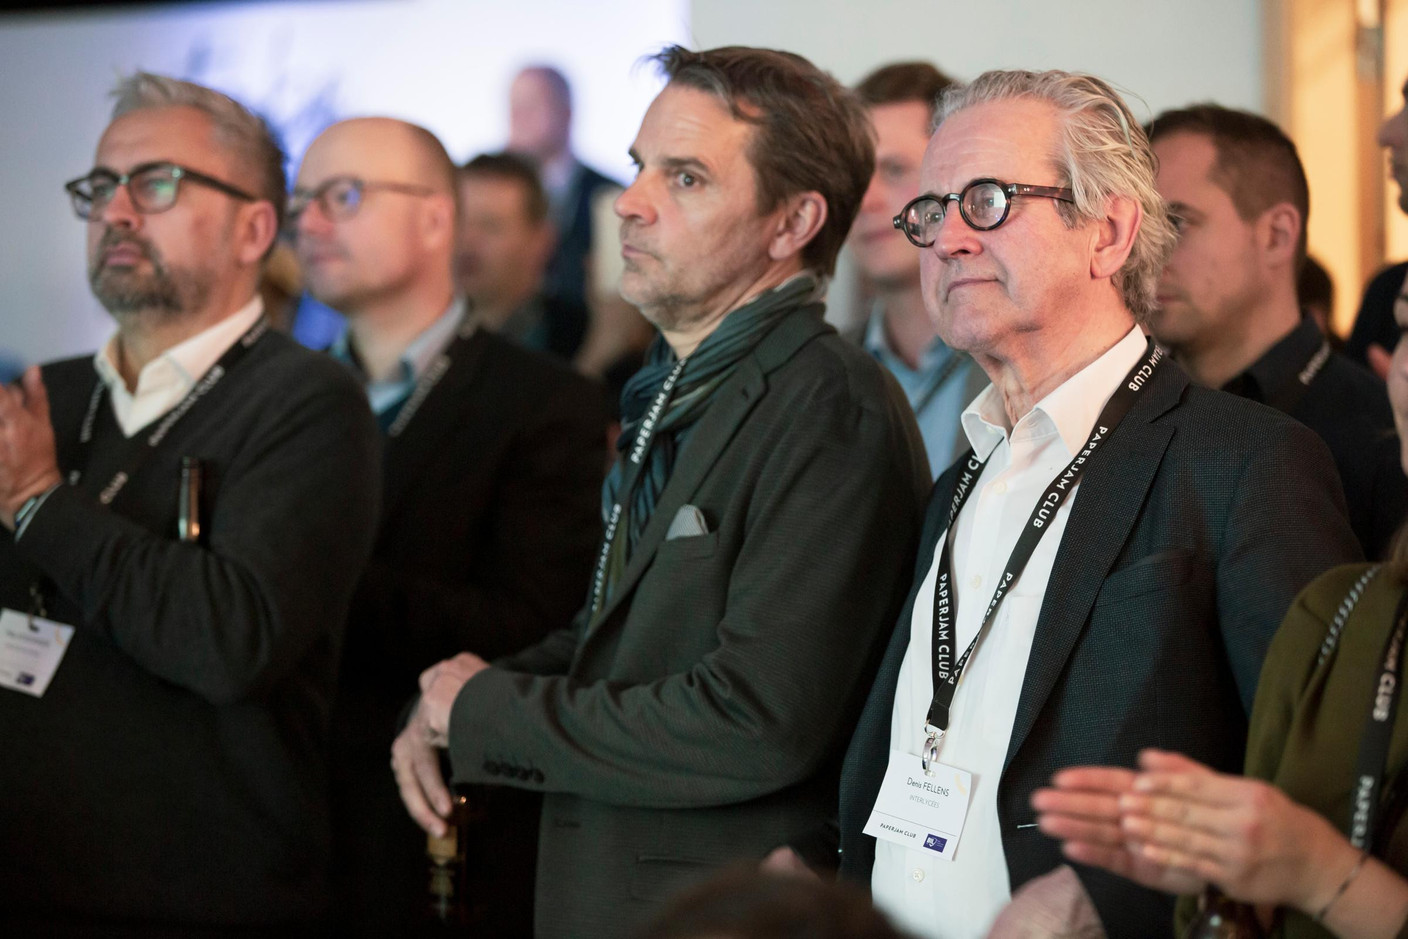 Denis Fellens (Interlycées) à droite (Photo: Jan Hanrion/ Maison Moderne)